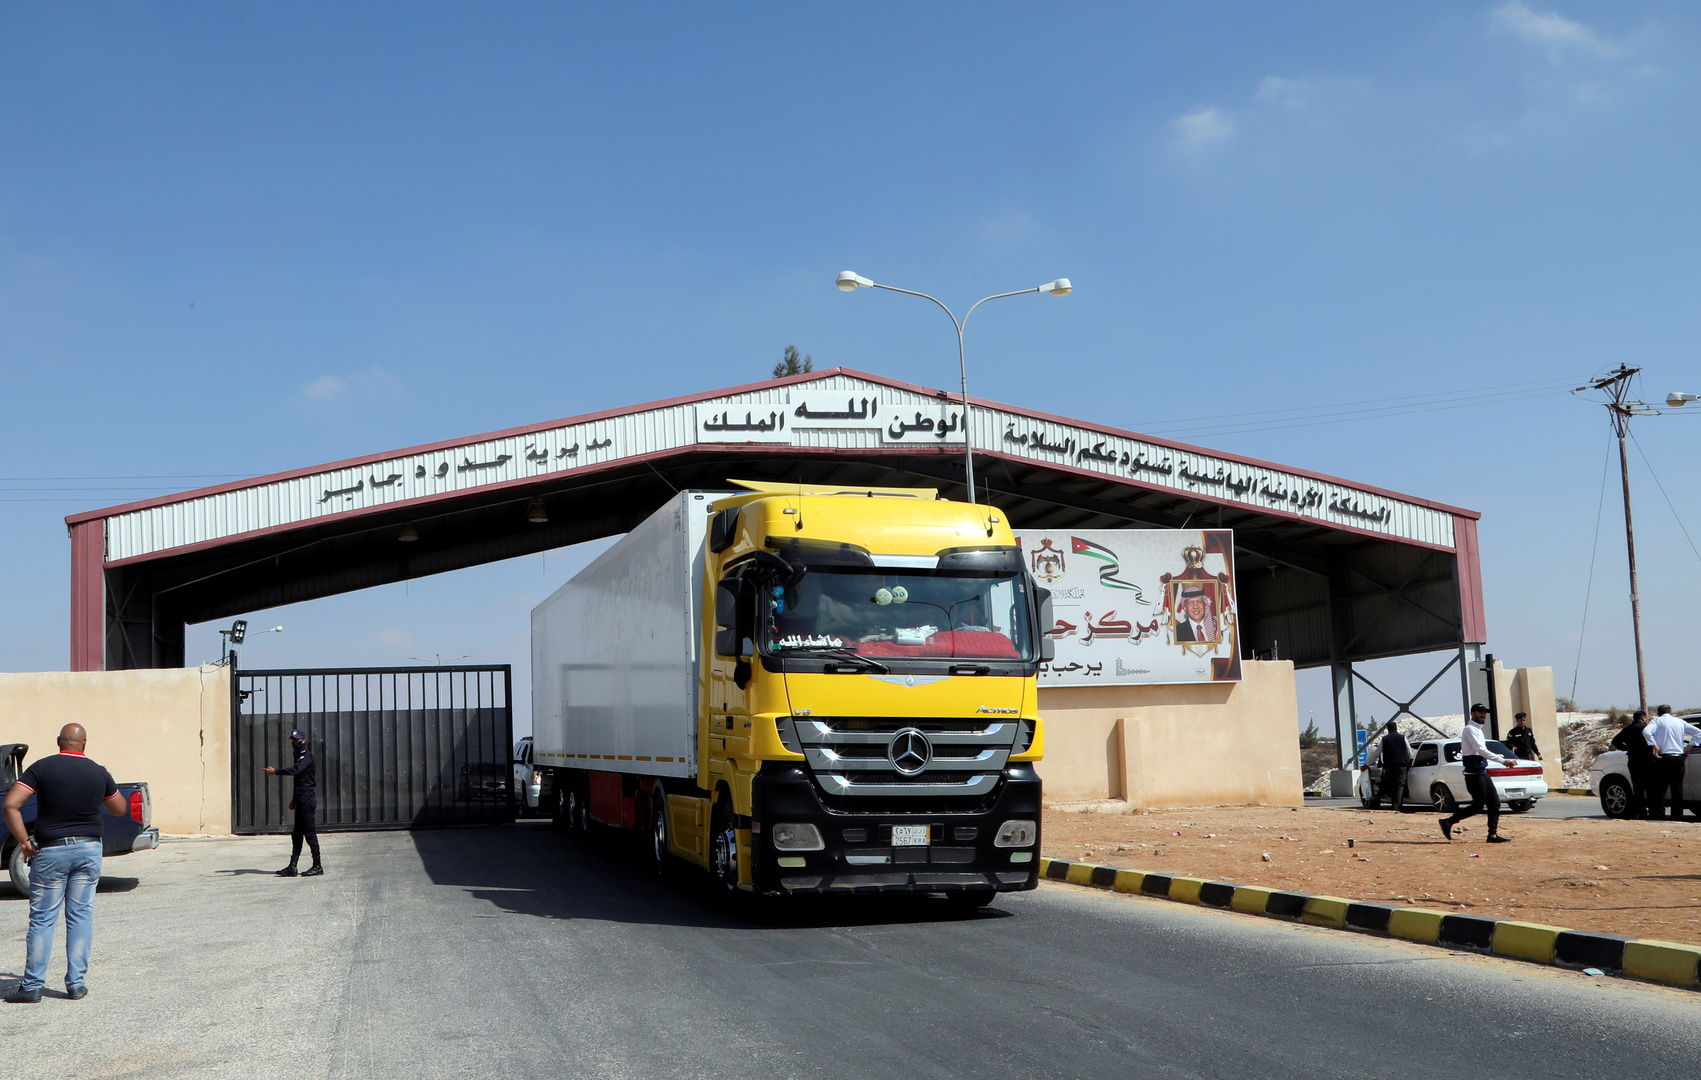 ارتفاع حركة الشاحنات من الأردن إلى سوريا بنسبة 850%